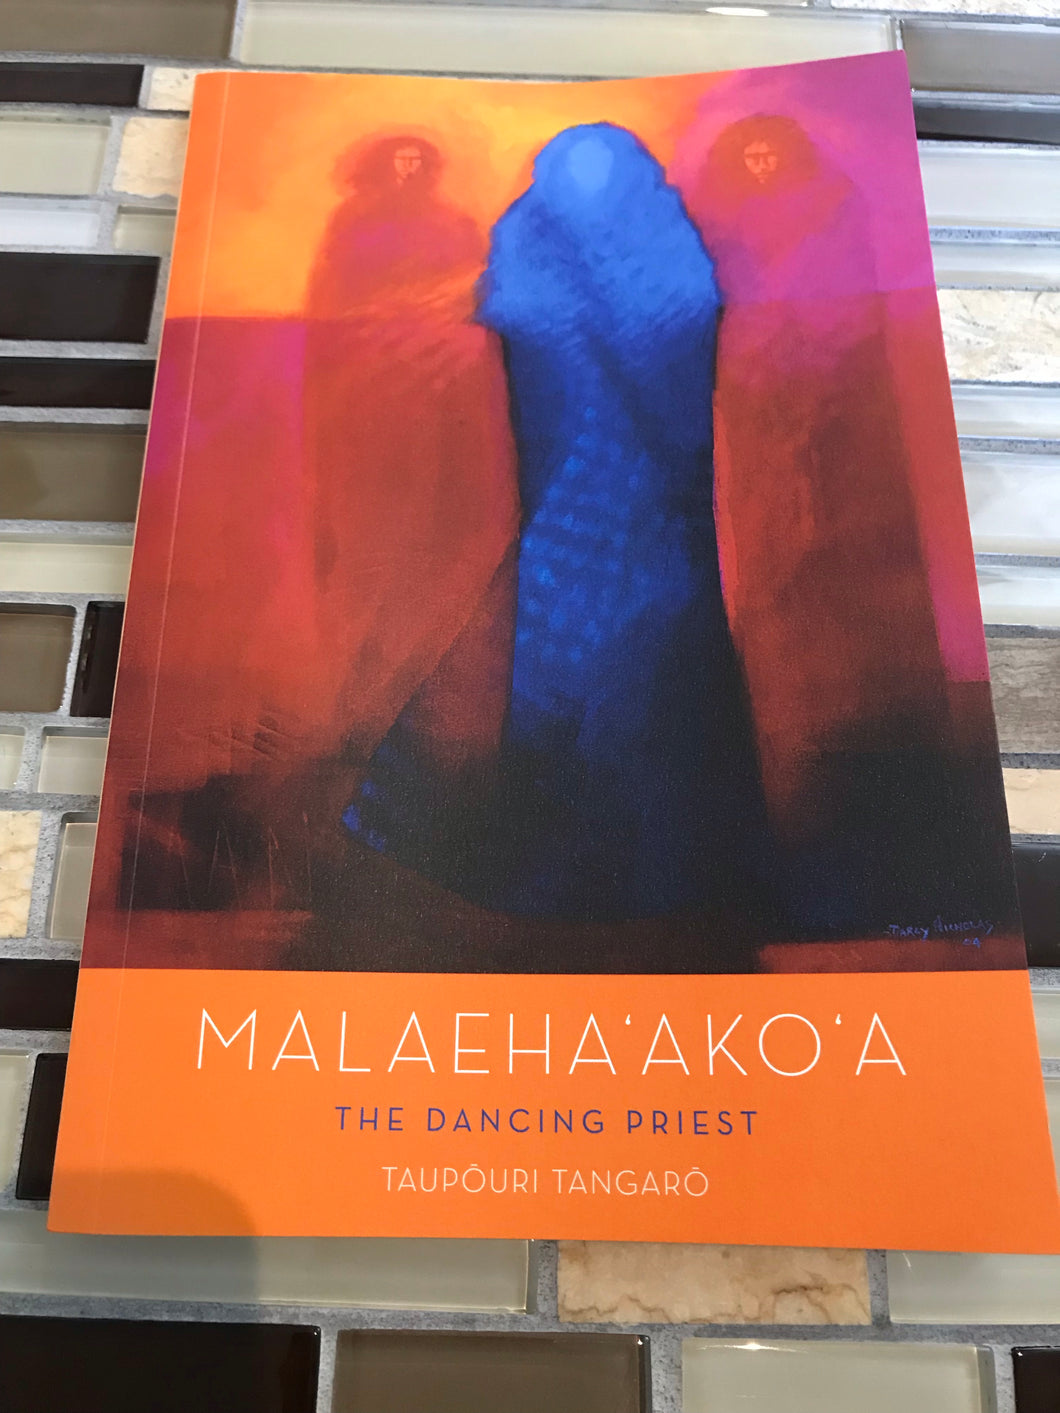 Malaehaakoa, The Dancing Priest by Taupouri Tangaro